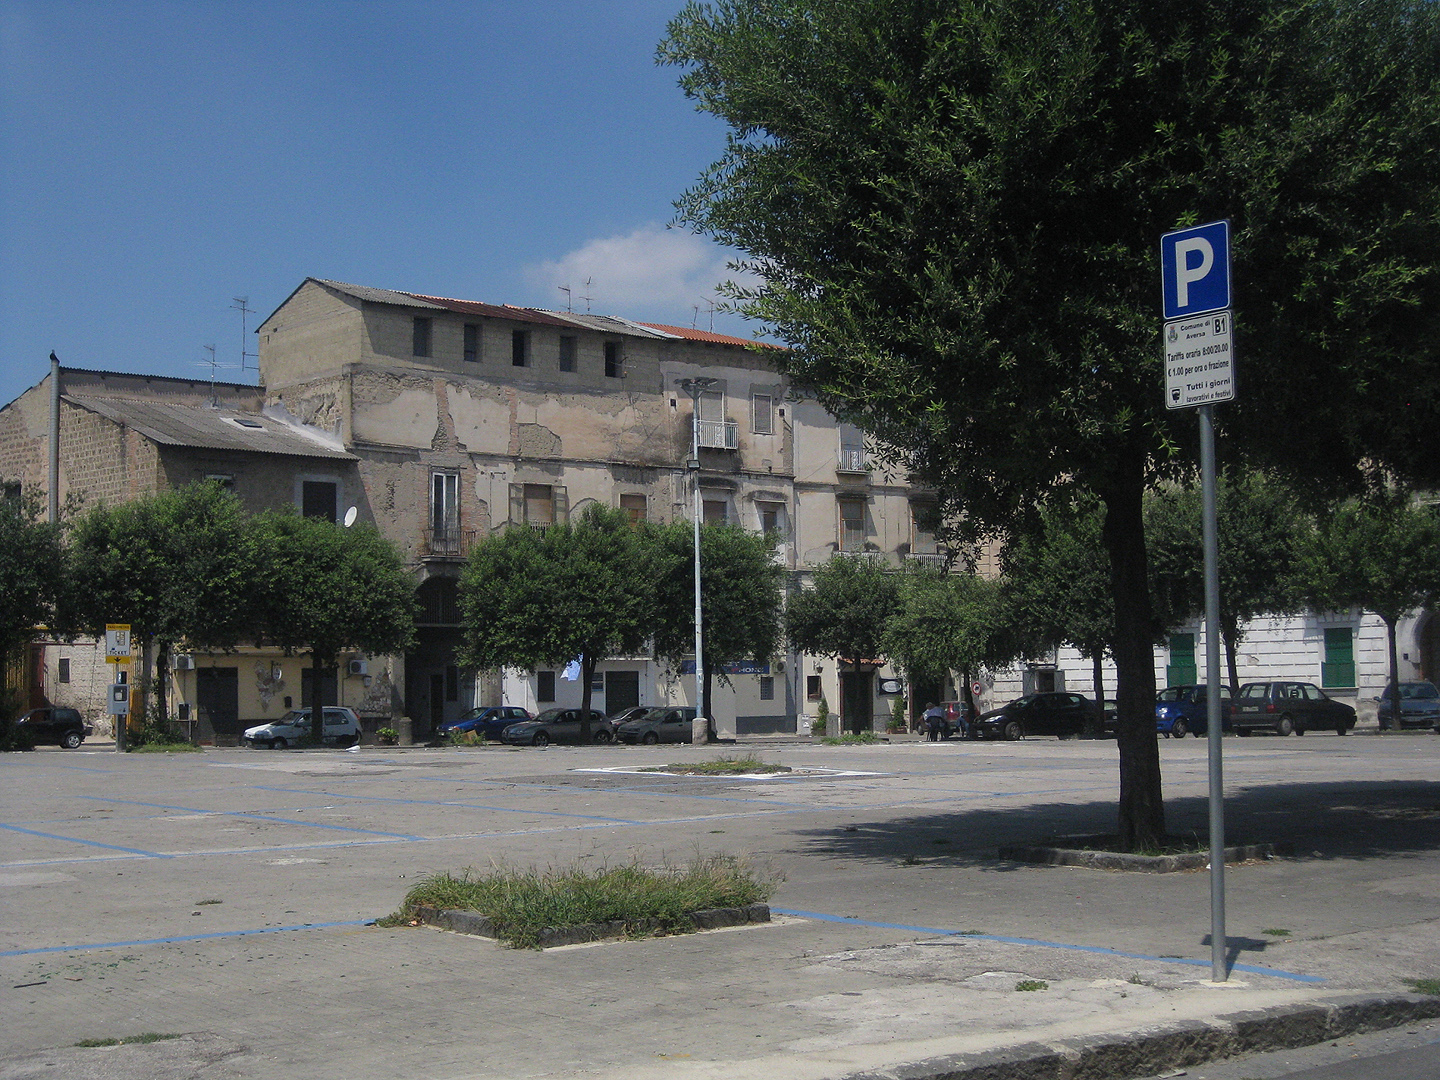 Piazza Guglielmo Marconi, Aversa, Campani, Itali, Piazza Guglielmo Marconi, Aversa, Campania, Italy